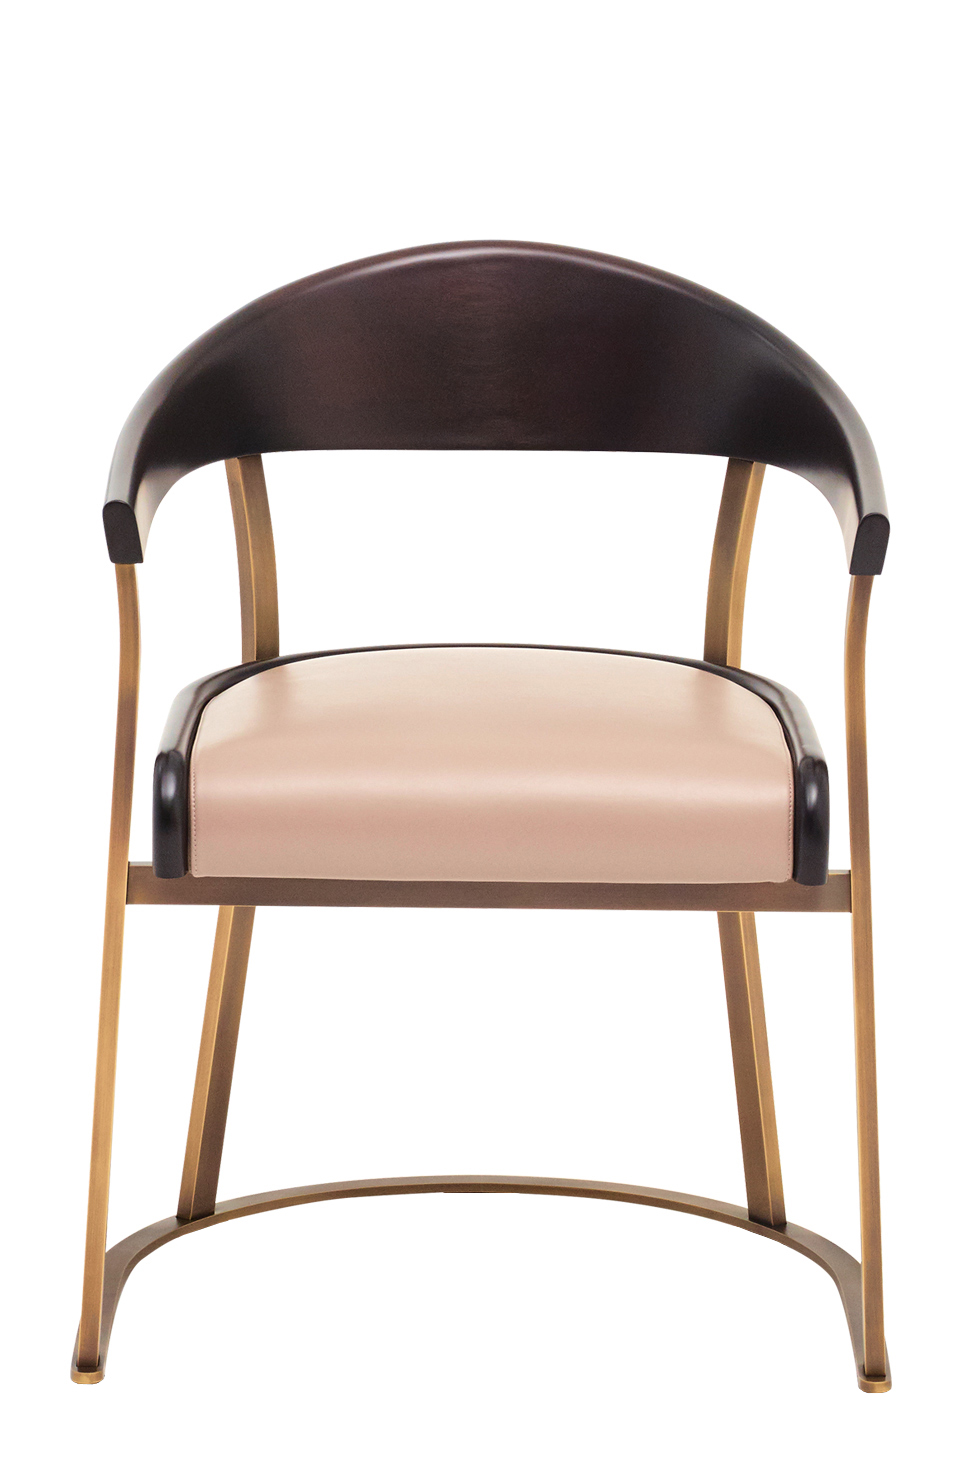 Rachele è una sedia con braccioli in bronzo e con schienale in legno o pelle e seduta in pelle, del catalogo di Promemoria | Promemoria